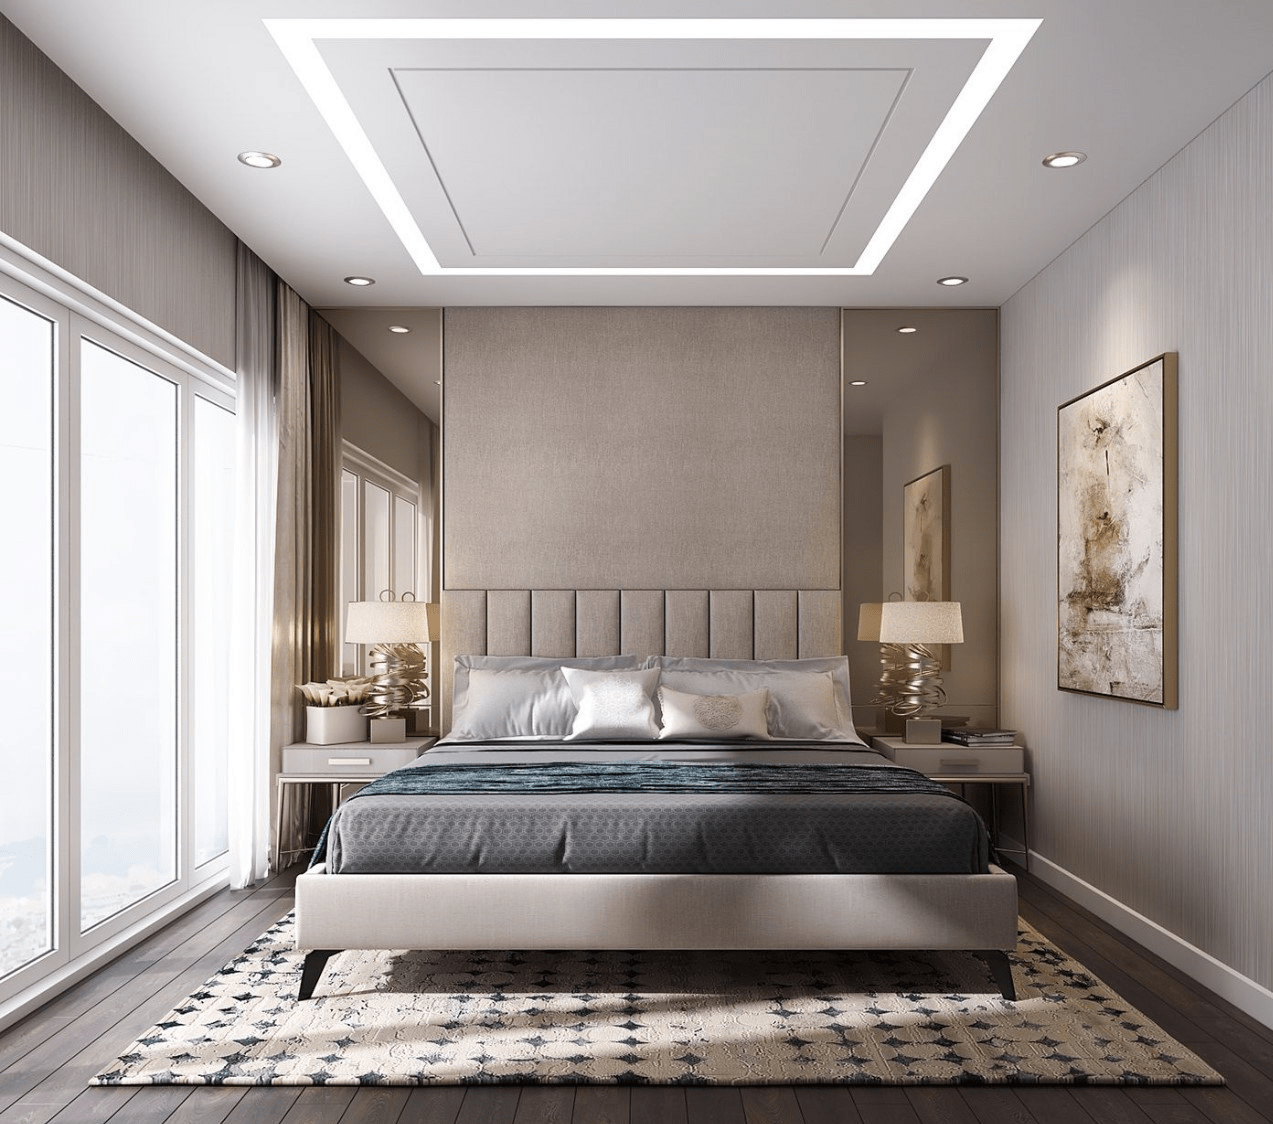 Mẫu trần thạch cao phẳng cho phòng ngủ đẹp, thiết kế hiện đại